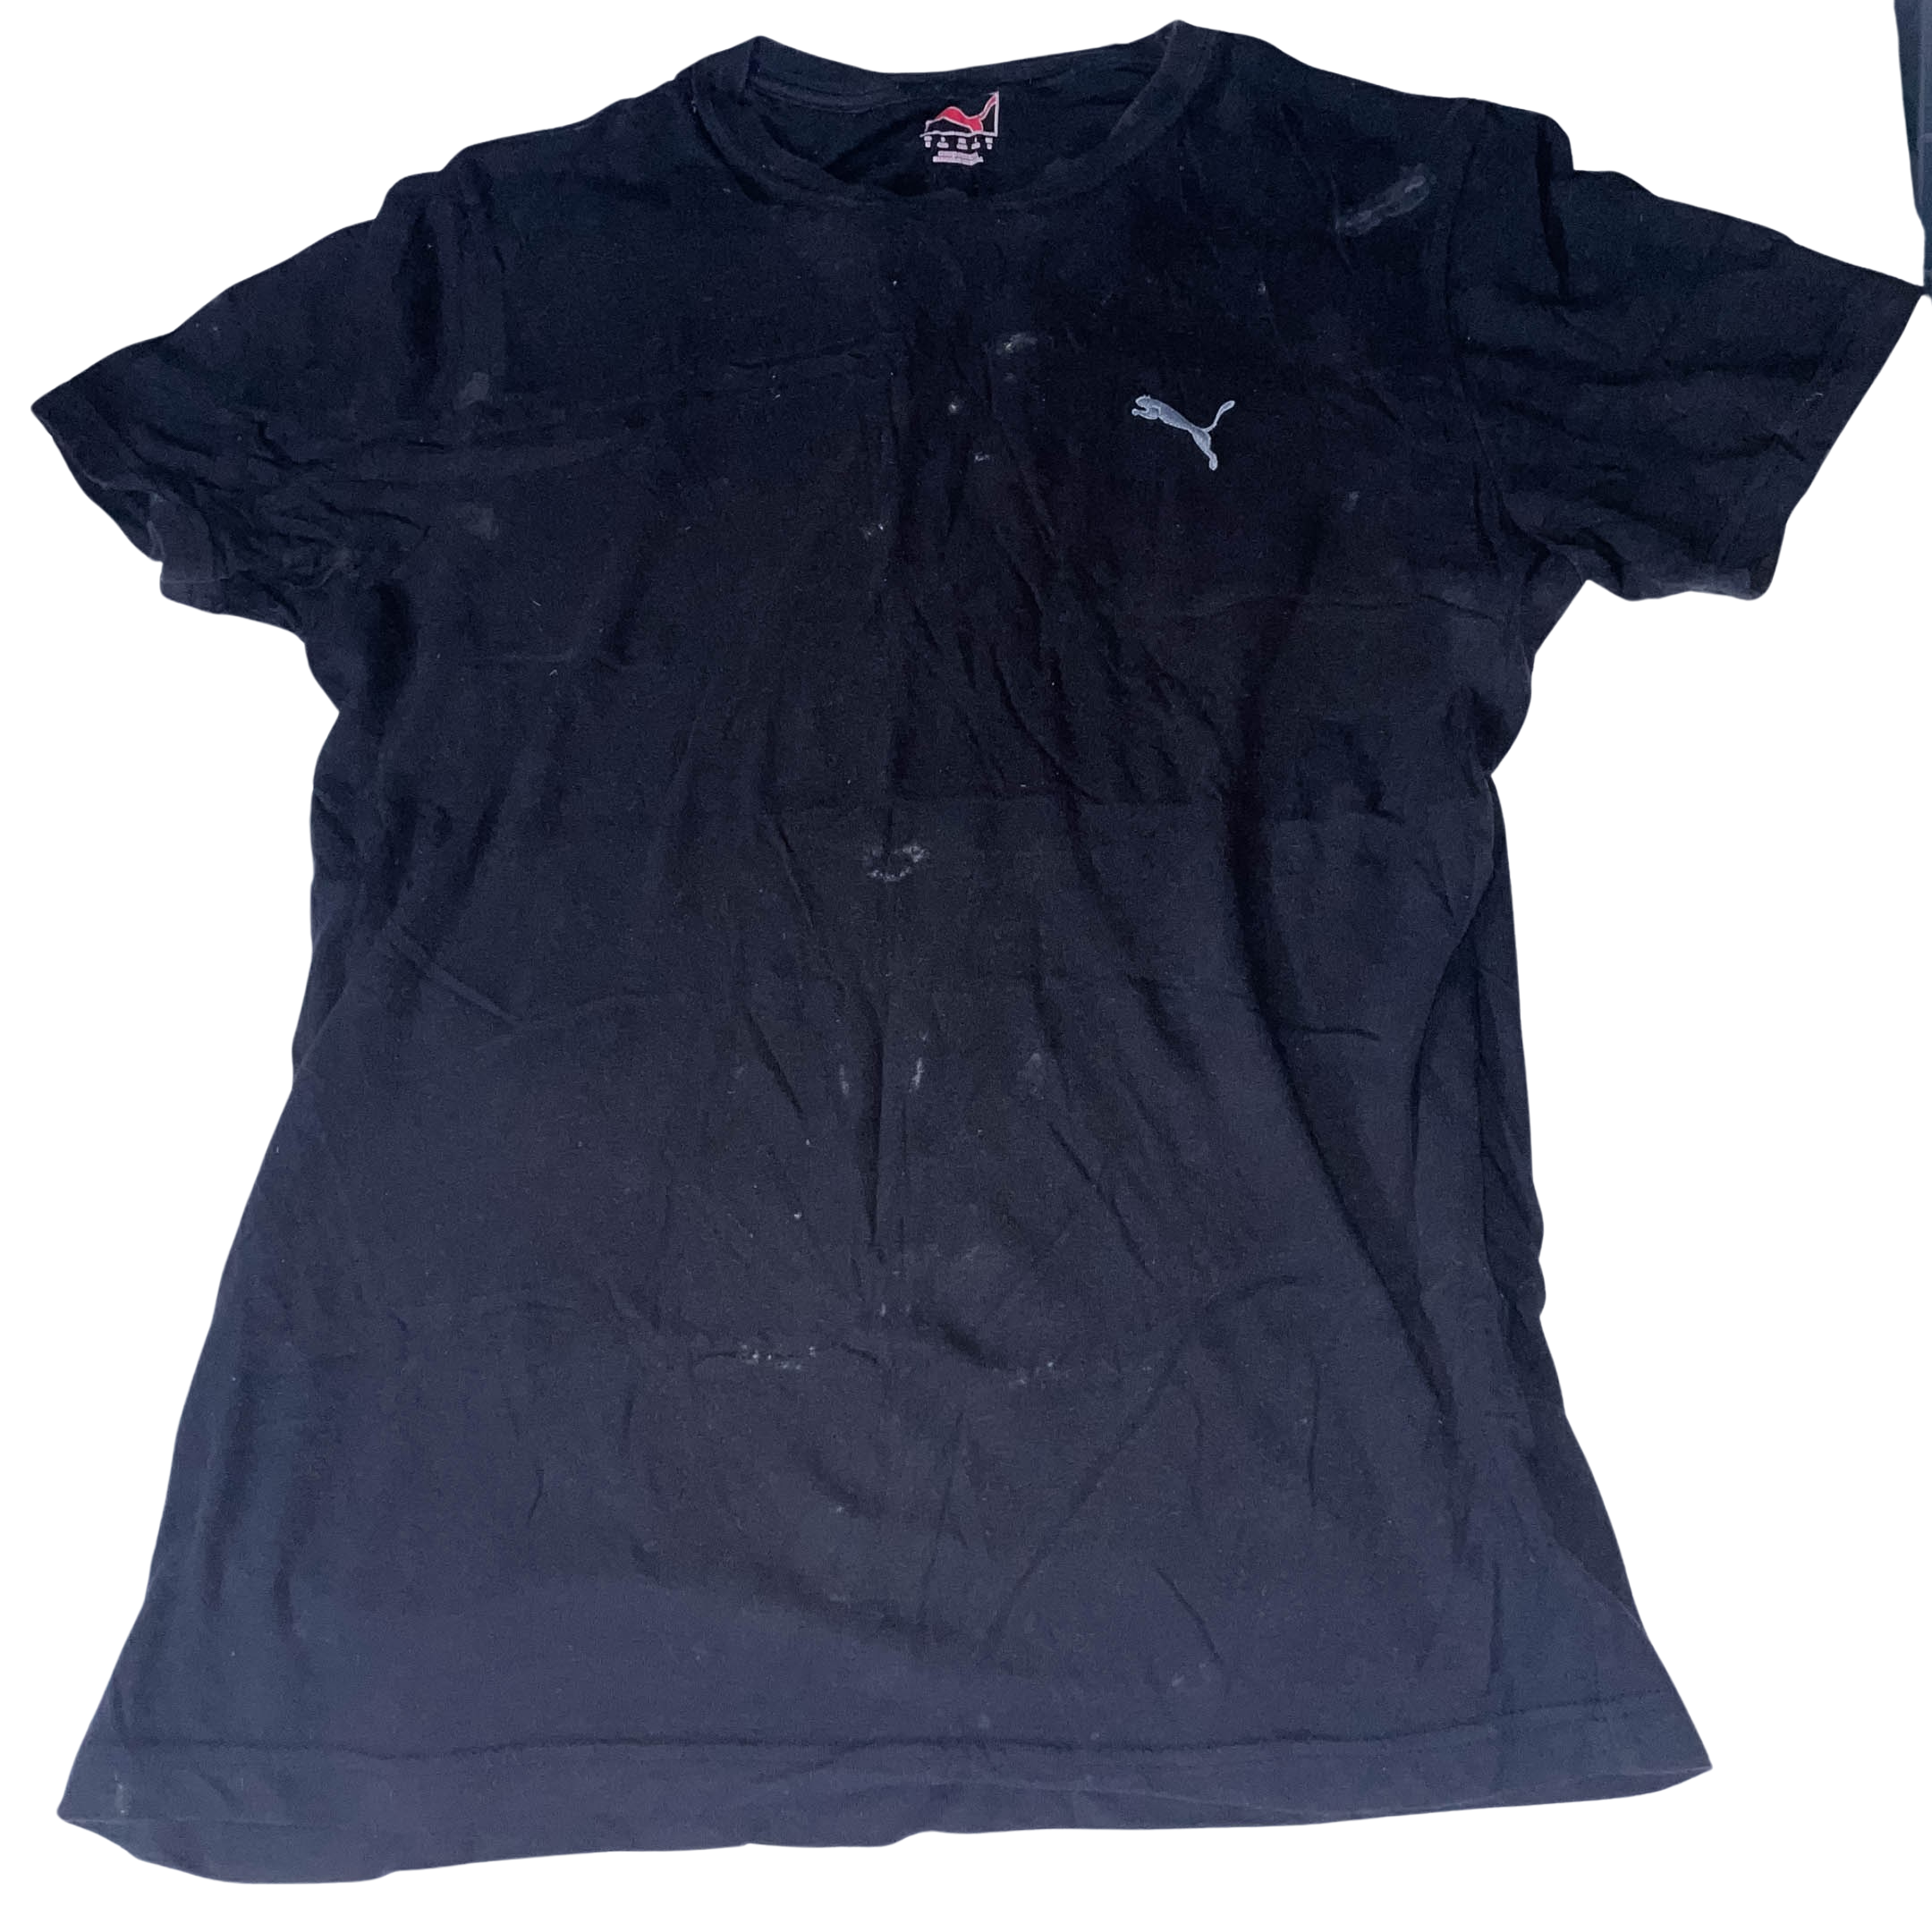 Vintage Black Puma lifestyle medium short sleeve tshirt